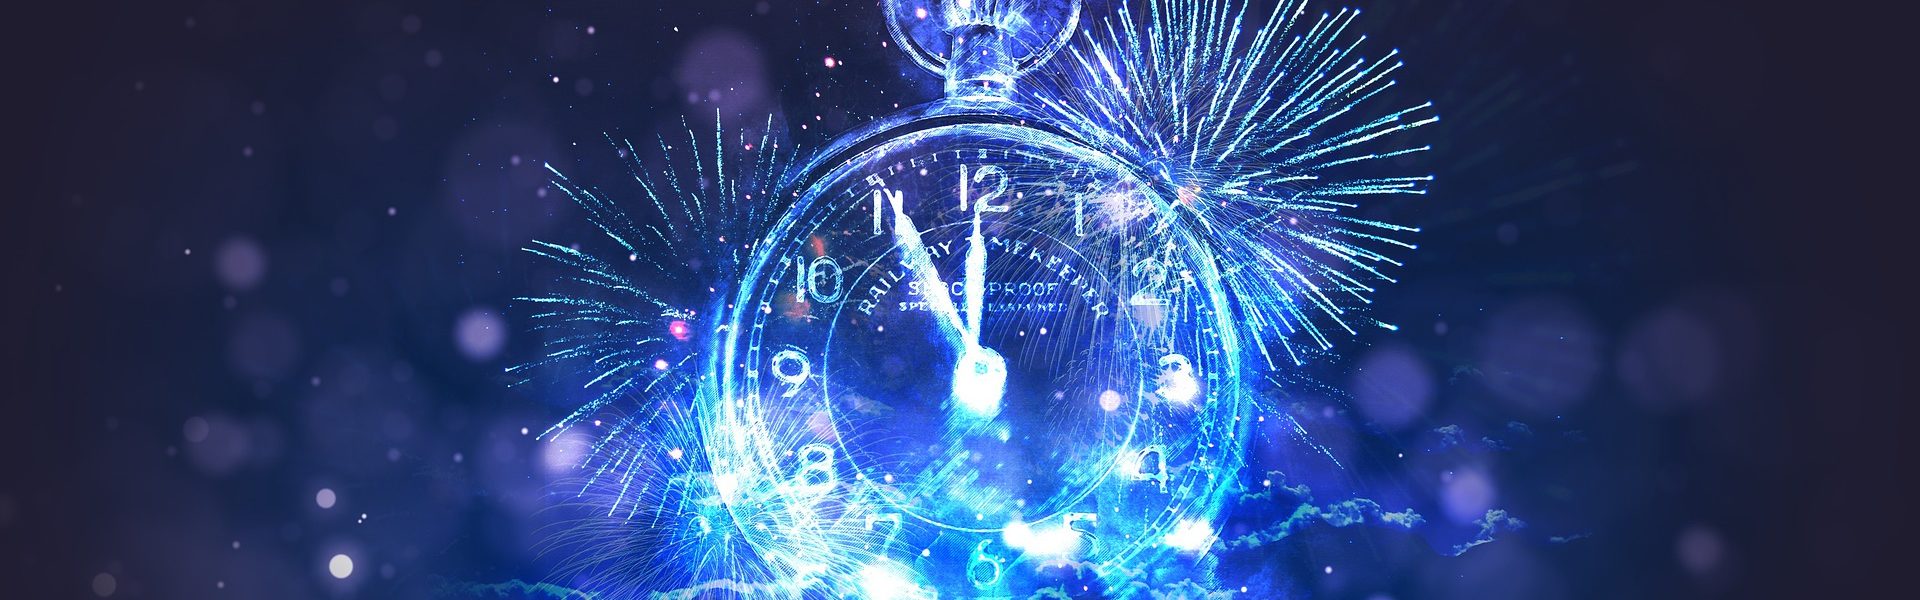 new years clock